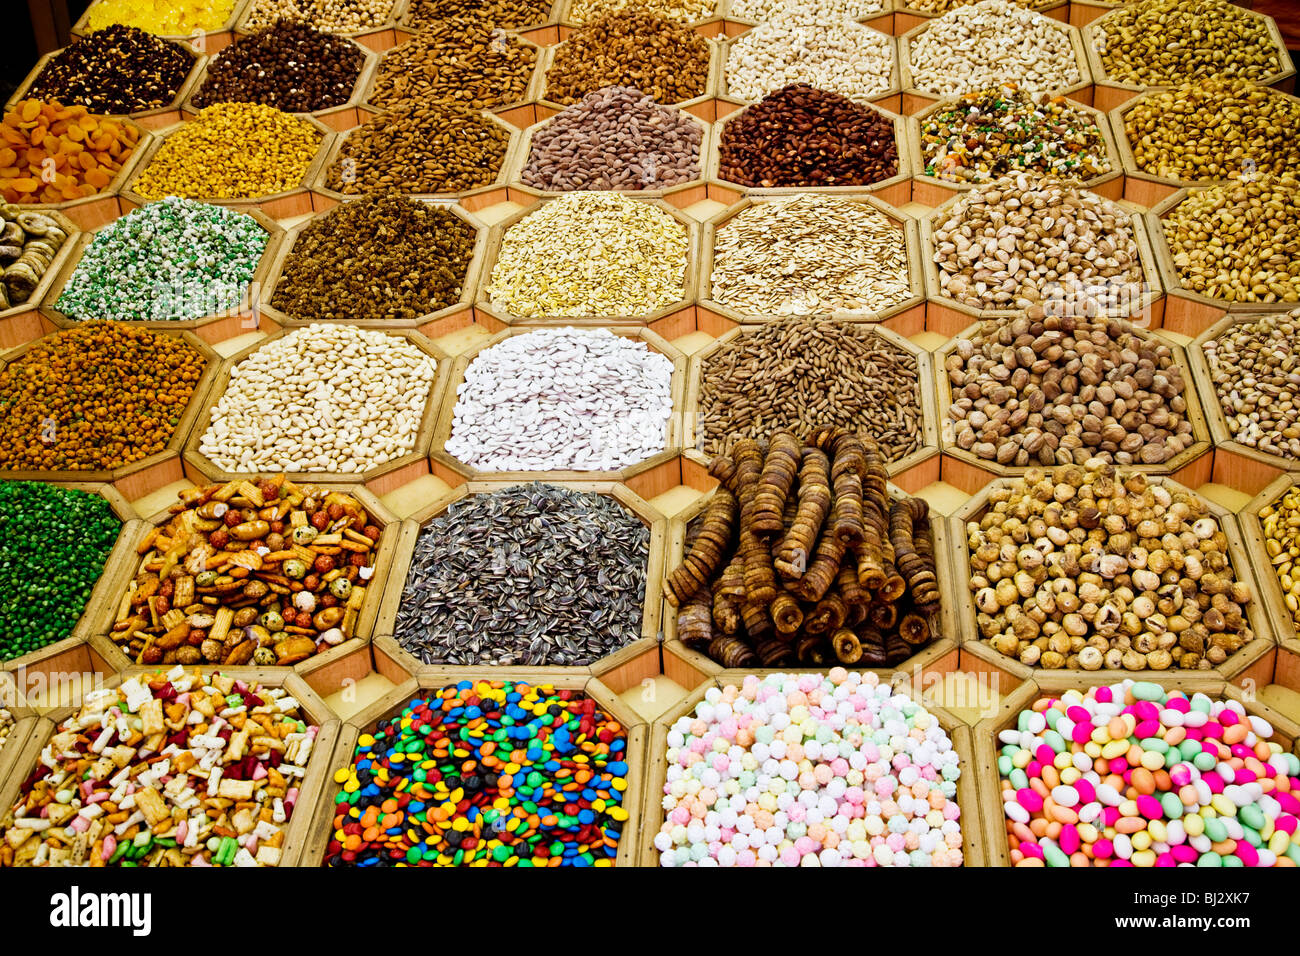 Les écrous d'arabie,graines et fruits secs sur l'affichage dans une boutique dans le souk aux épices de Deira, DUBAÏ, ÉMIRATS ARABES UNIS Banque D'Images